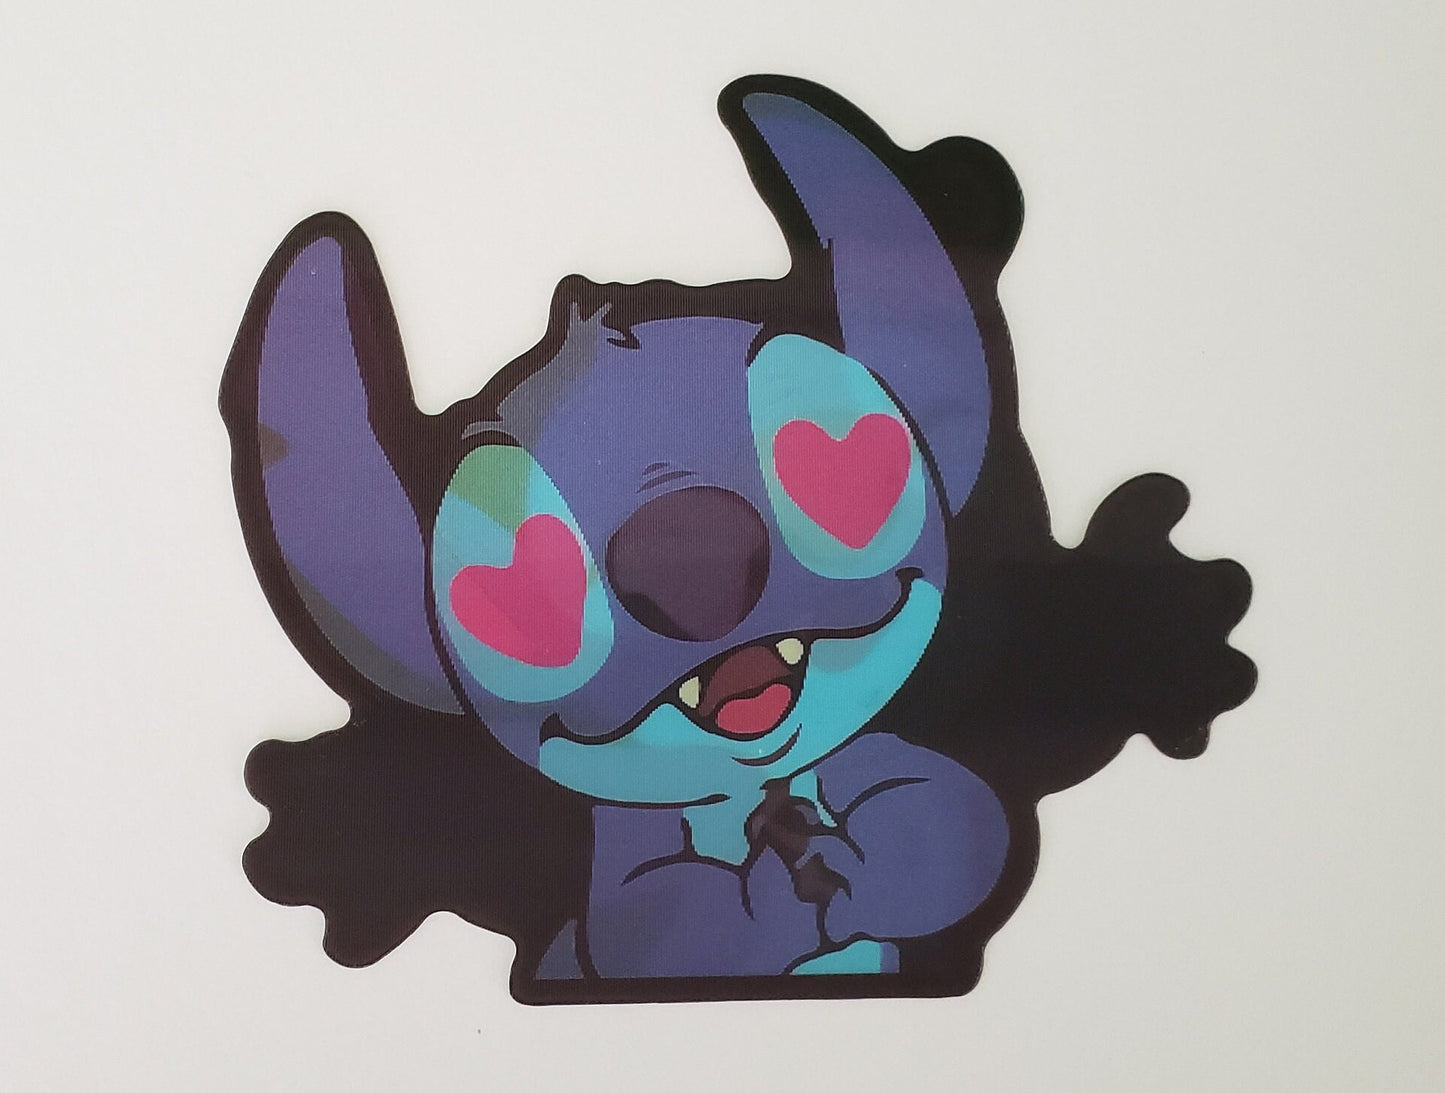 Blue Alien, Peeker Sticker, 3D Lenticular Car Sticker, Motion Sticker, Anime Sticker, Kawaii Sticker